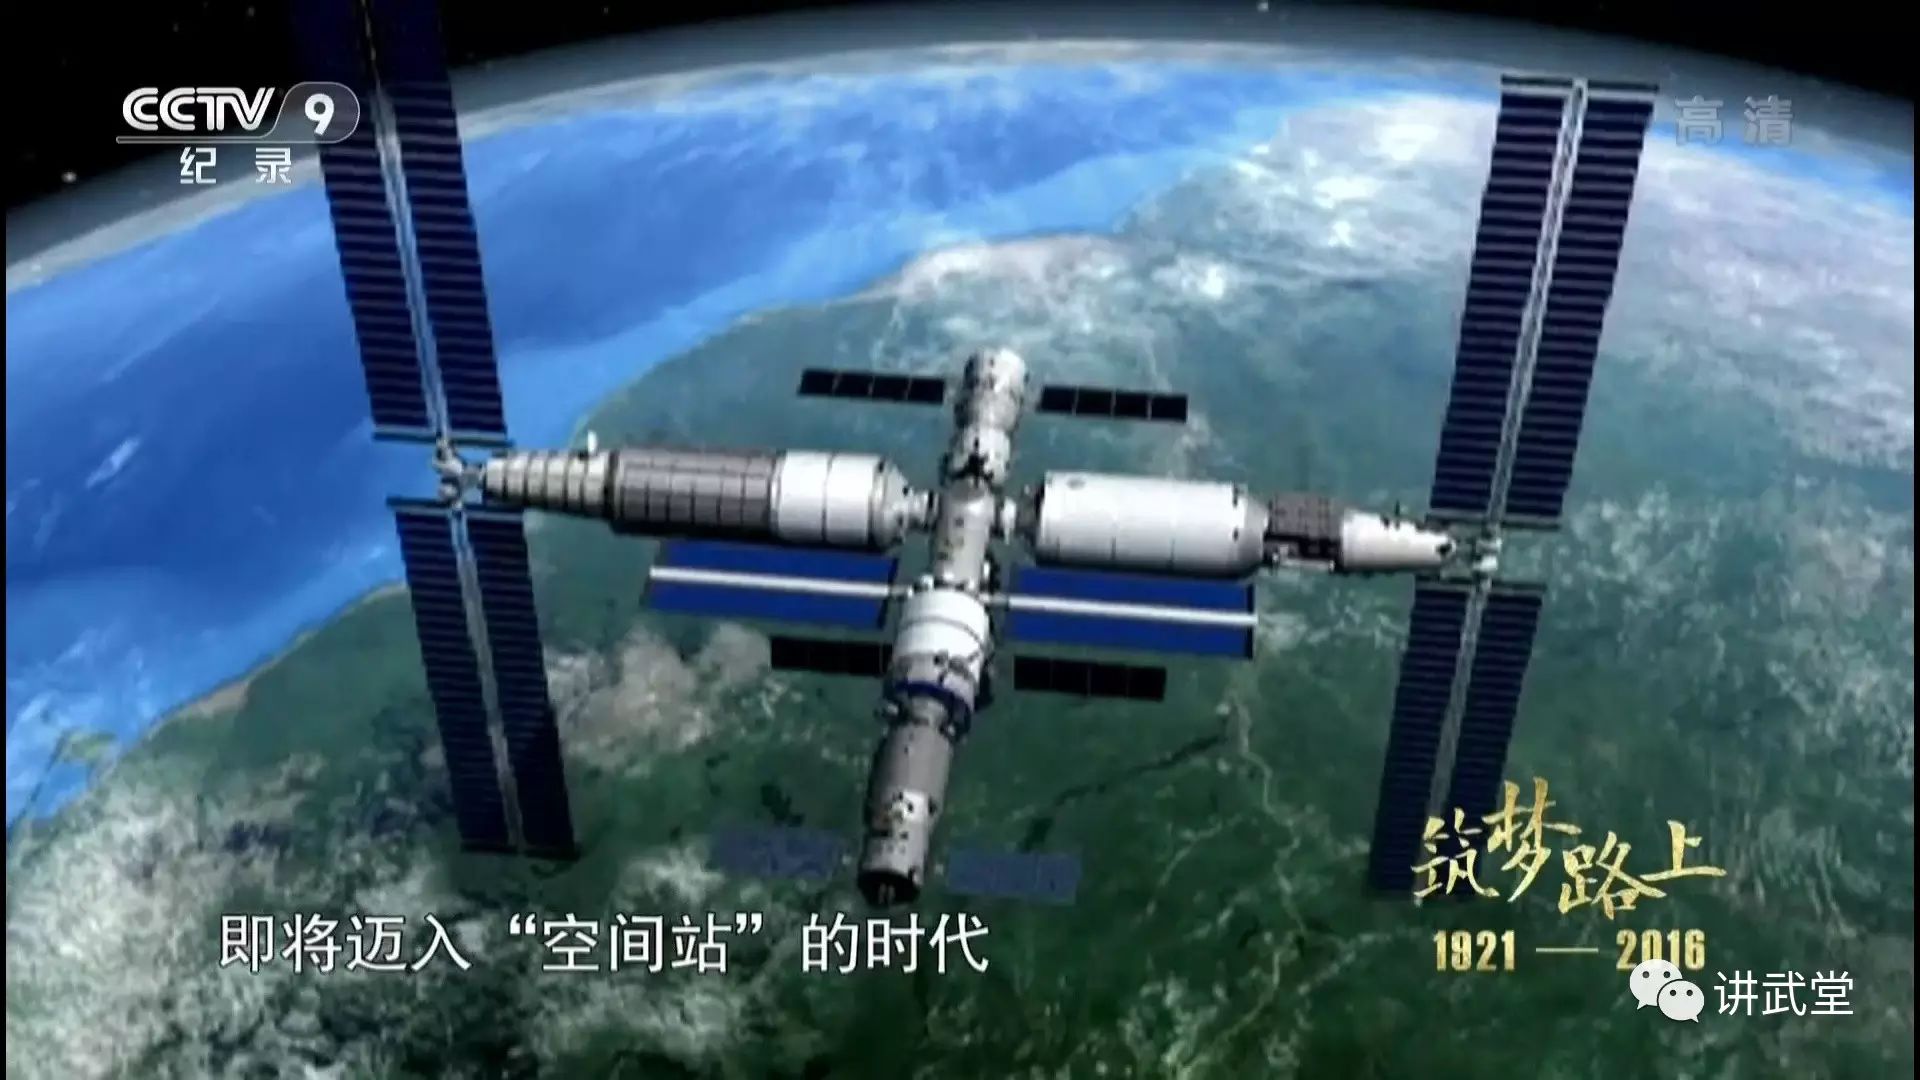 中国的天宫号空间站将于2022年建成,但它真能成为唯一的在轨空间站么?